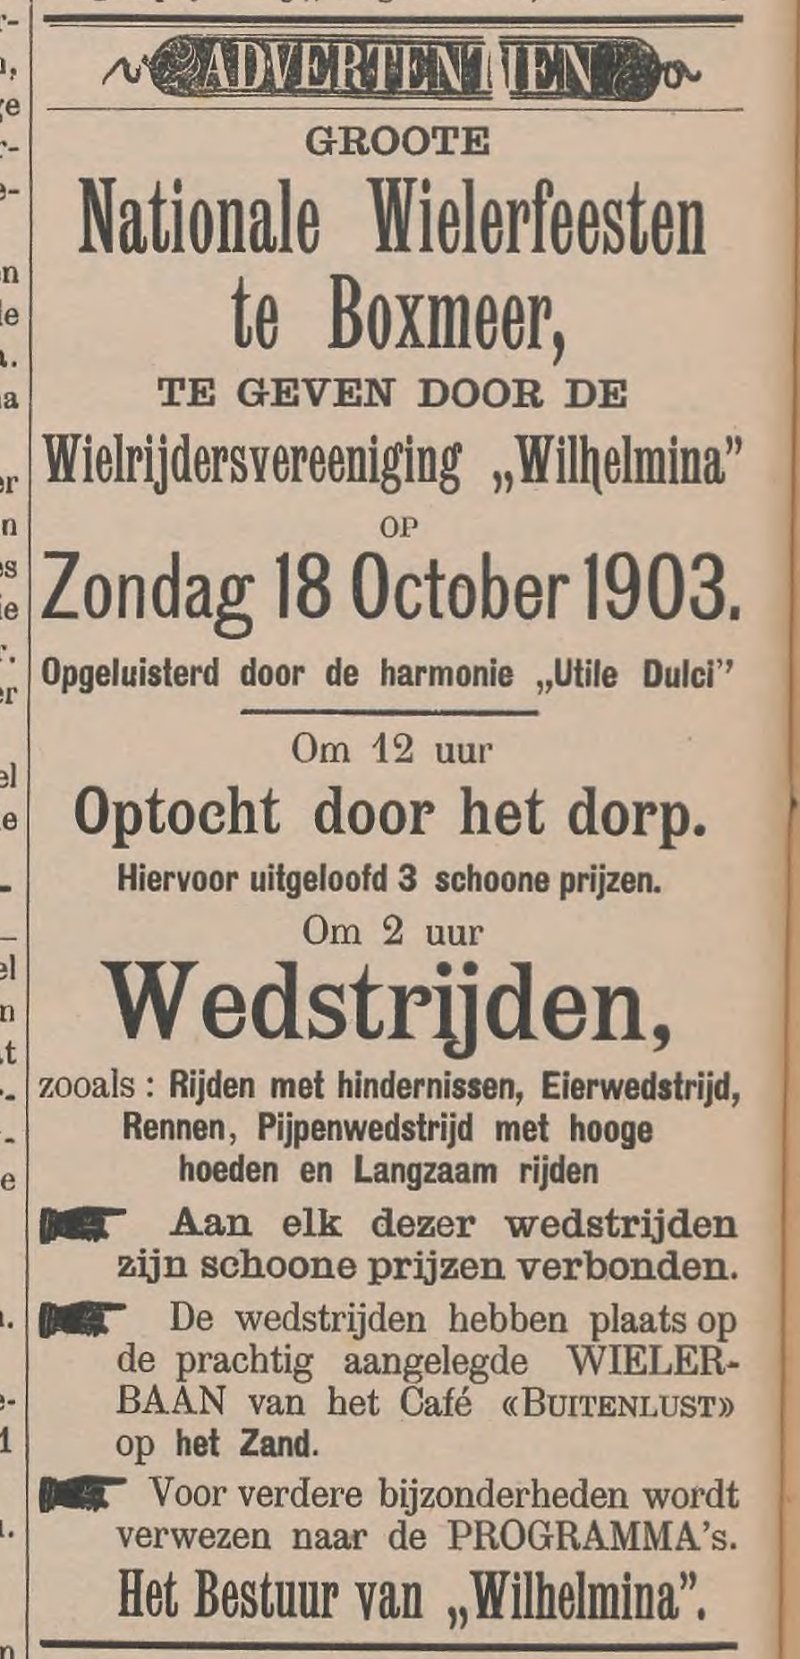 Bron: Boxmeersch Weekblad van 10 oktober 1903